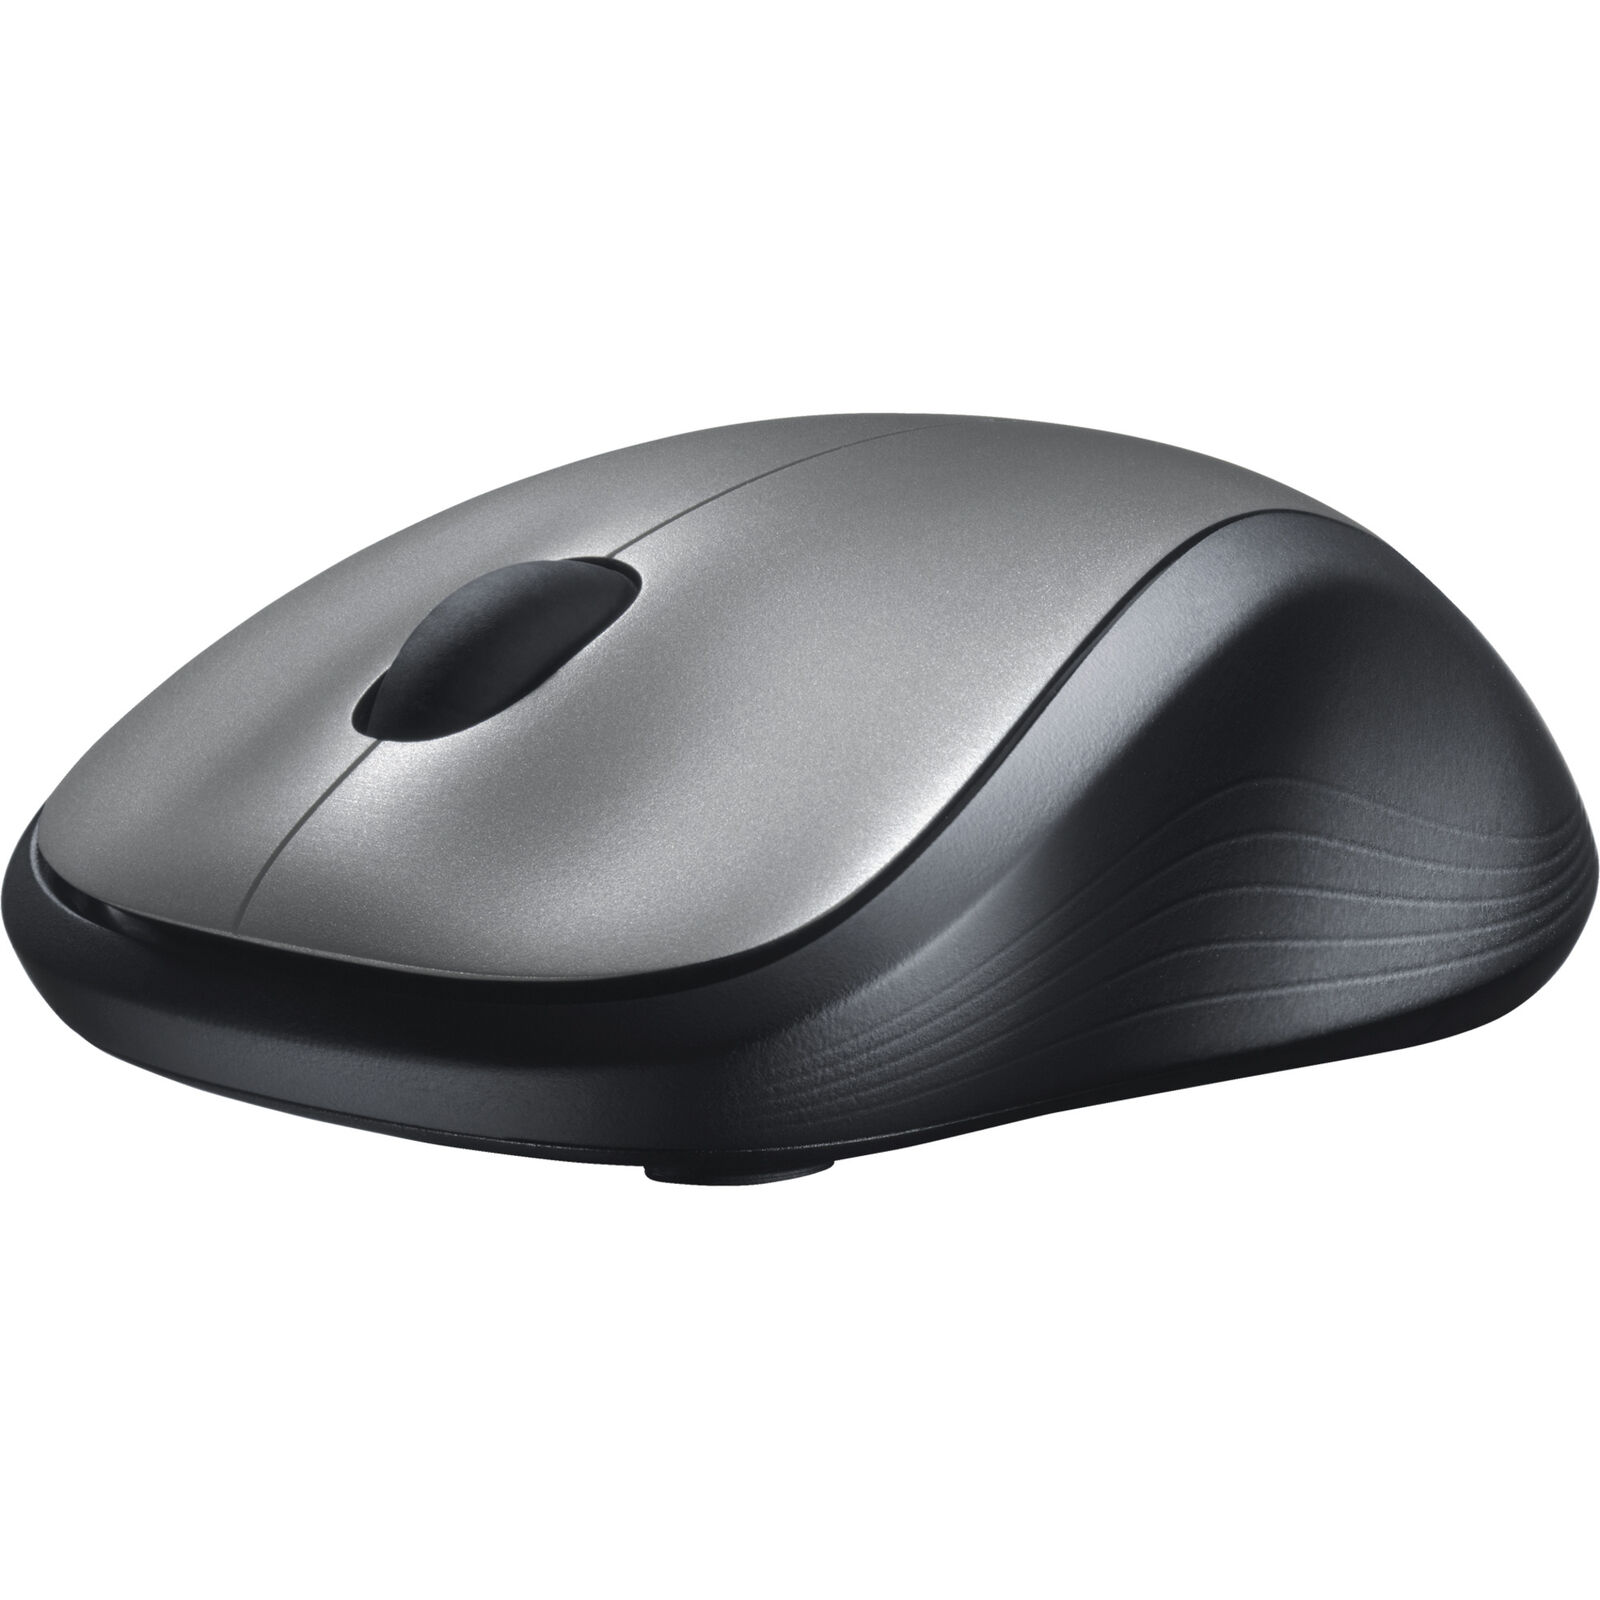 Мышь беспроводная logitech wireless. Мышь Logitech Wireless Mouse m310. Мышка беспроводная Logitech m310. Мышь беспроводная Logitech Wireless Mouse m310. Мышь Logitech m310 Silver (910-003986).